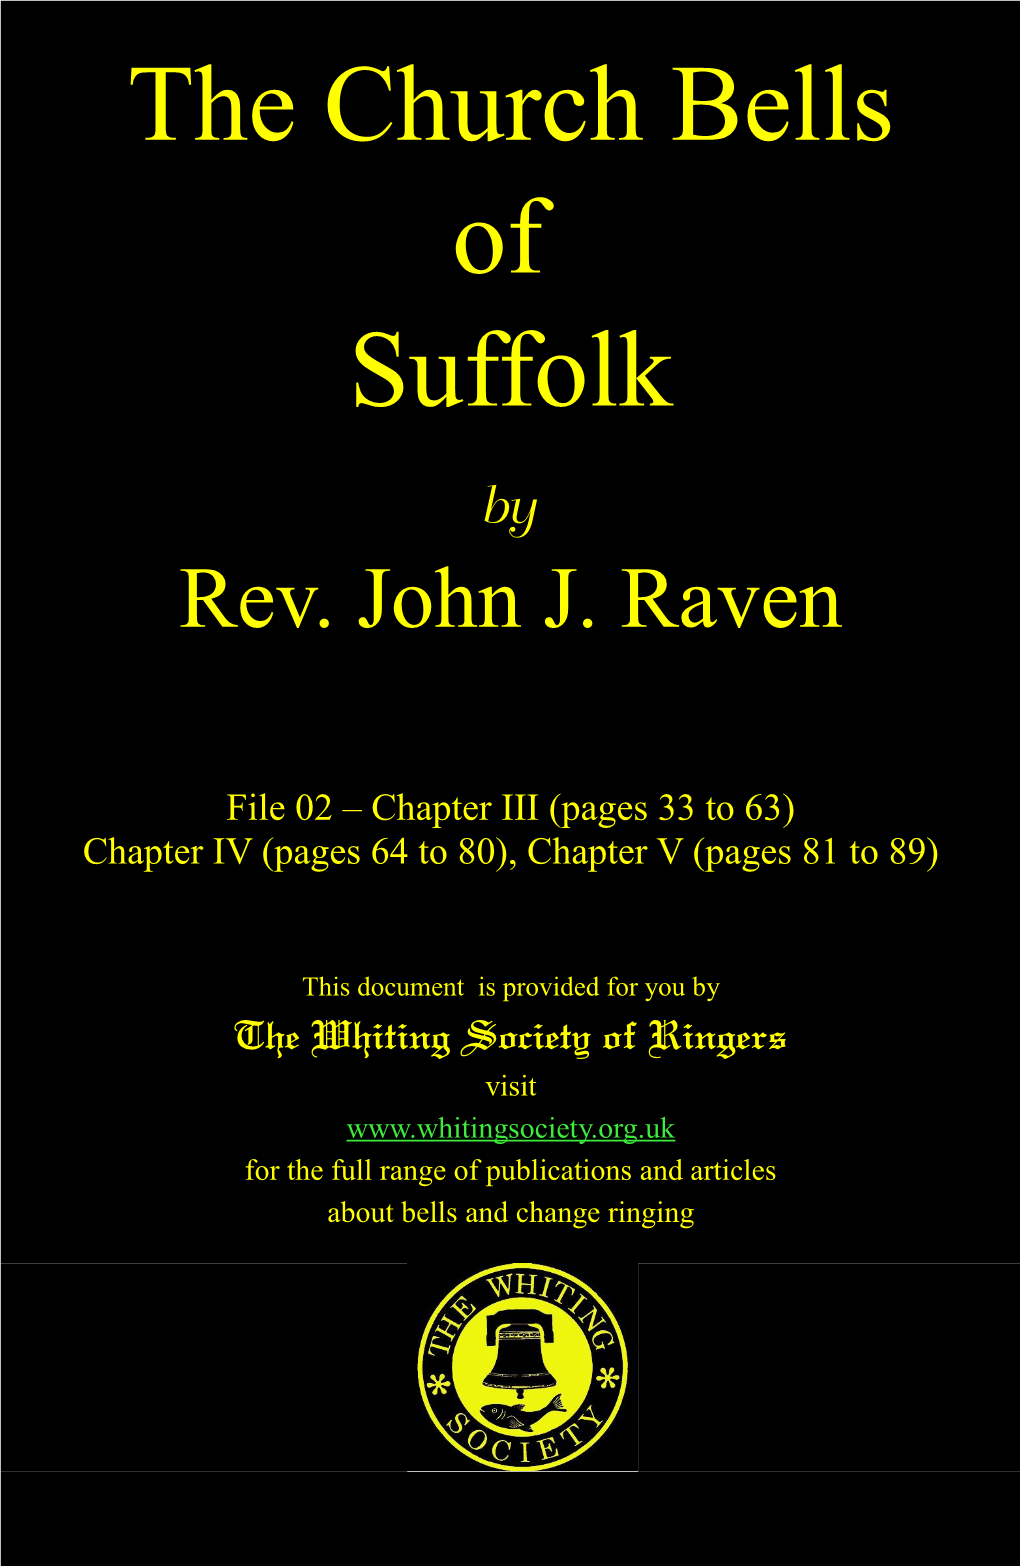 The Church Bells of Suffolk